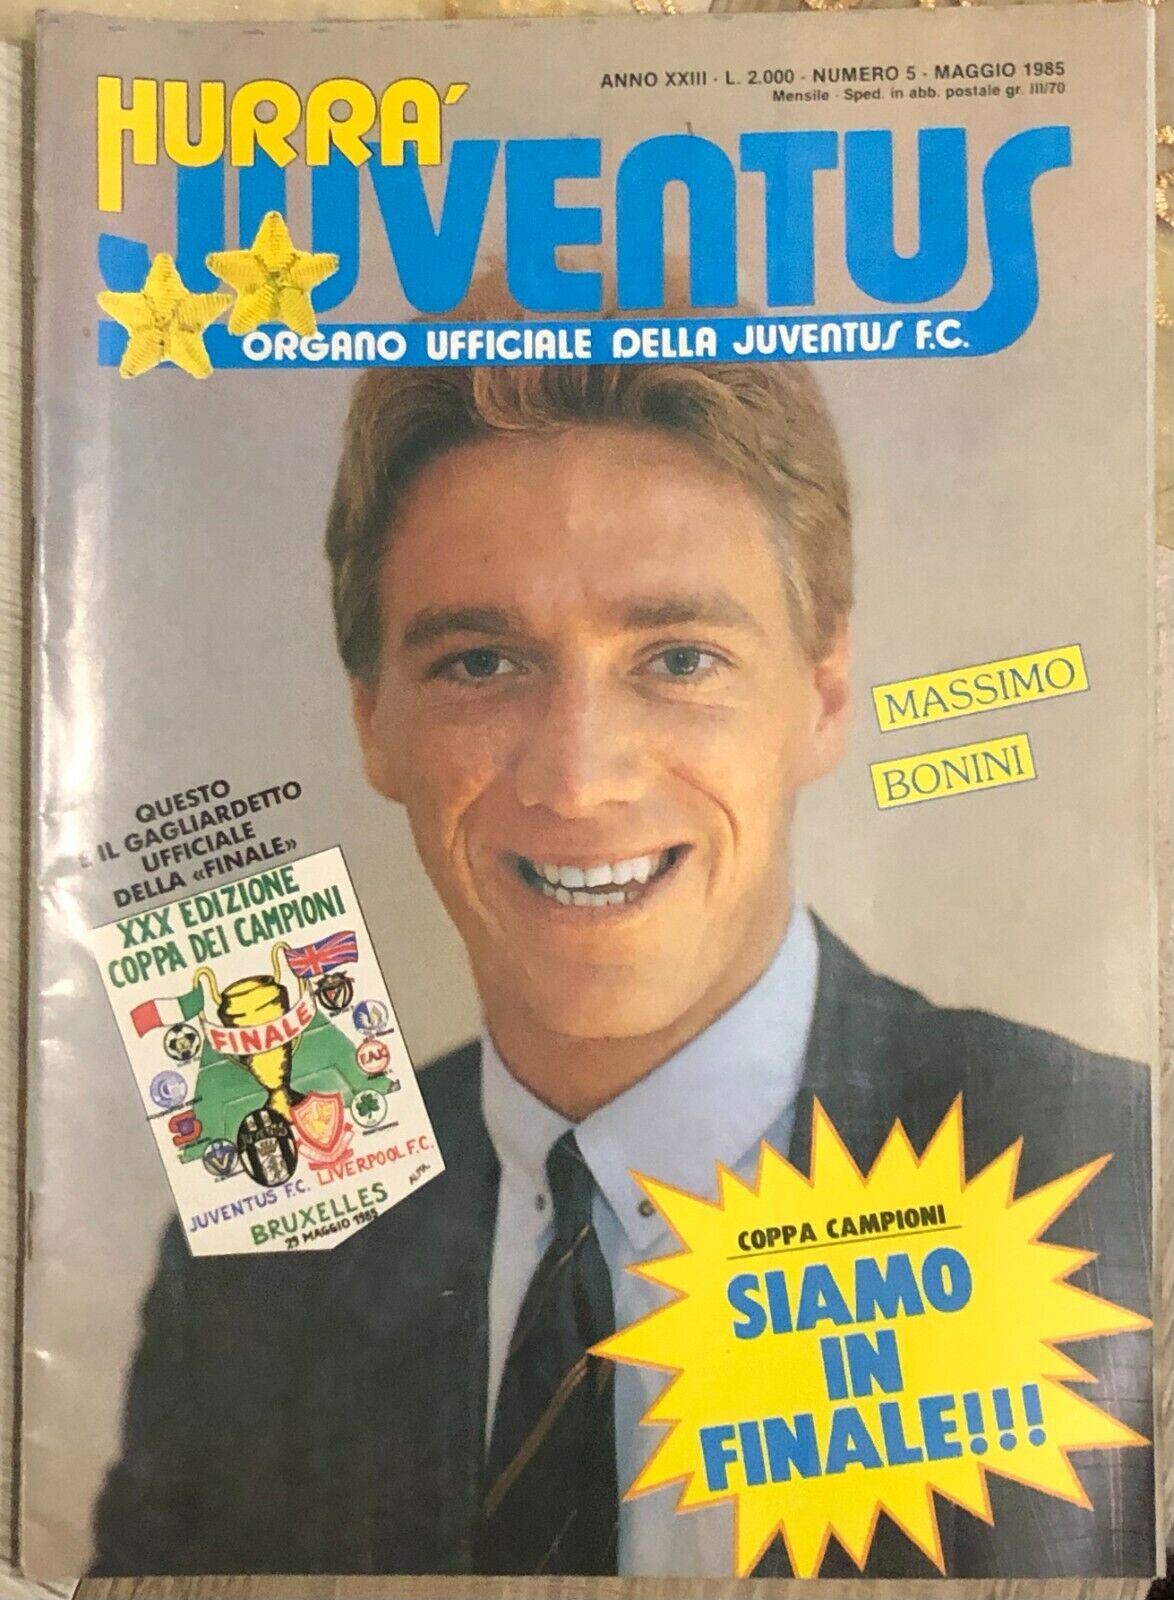 Hurr? Juventus n. 5/1985 di Aa.vv.,  1985,  Juventus F.c.